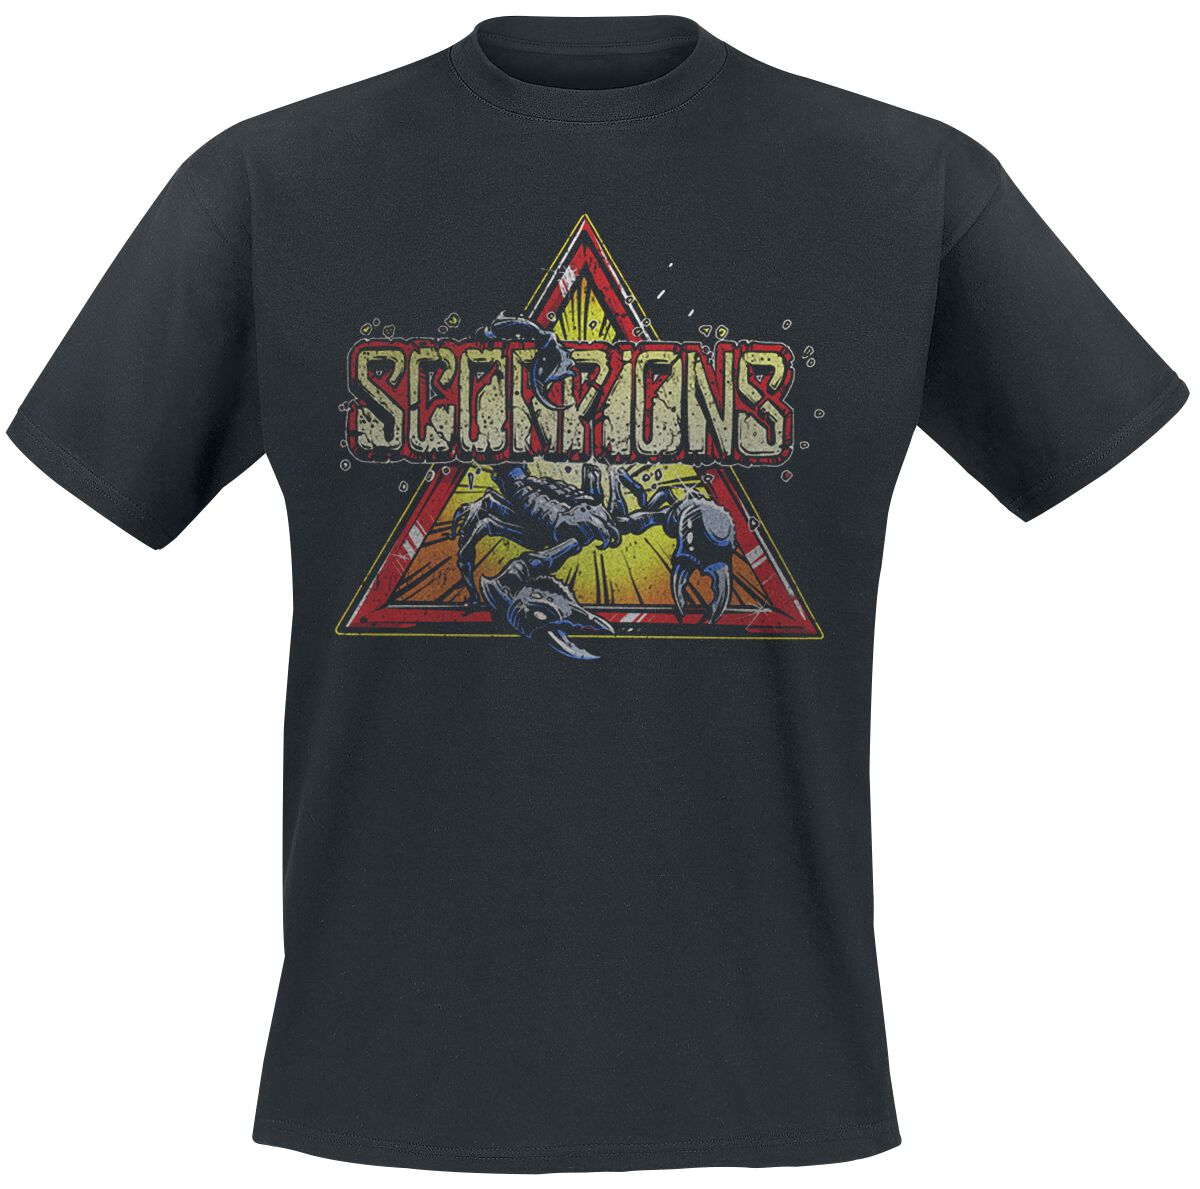 Scorpions T-Shirt - Triangle Scorpion - S bis 3XL - für Männer - Größe 3XL - schwarz  - Lizenziertes Merchandise!